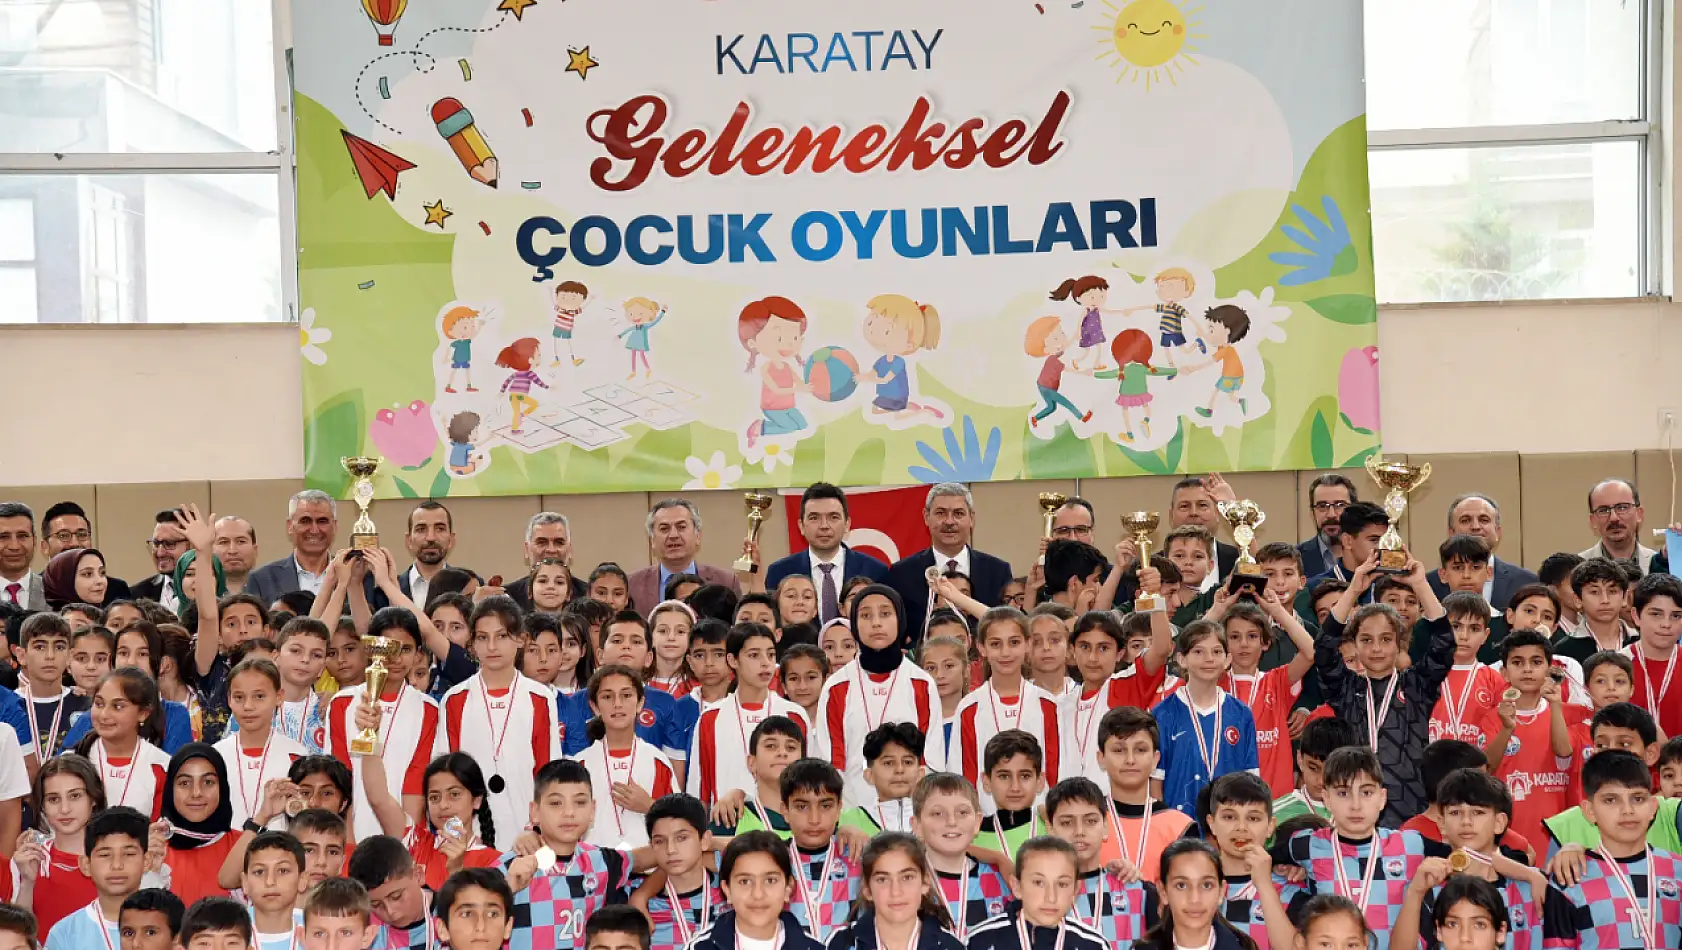 Konya'da Çocuk Oyunları Turnuvaları sonuçlandı!